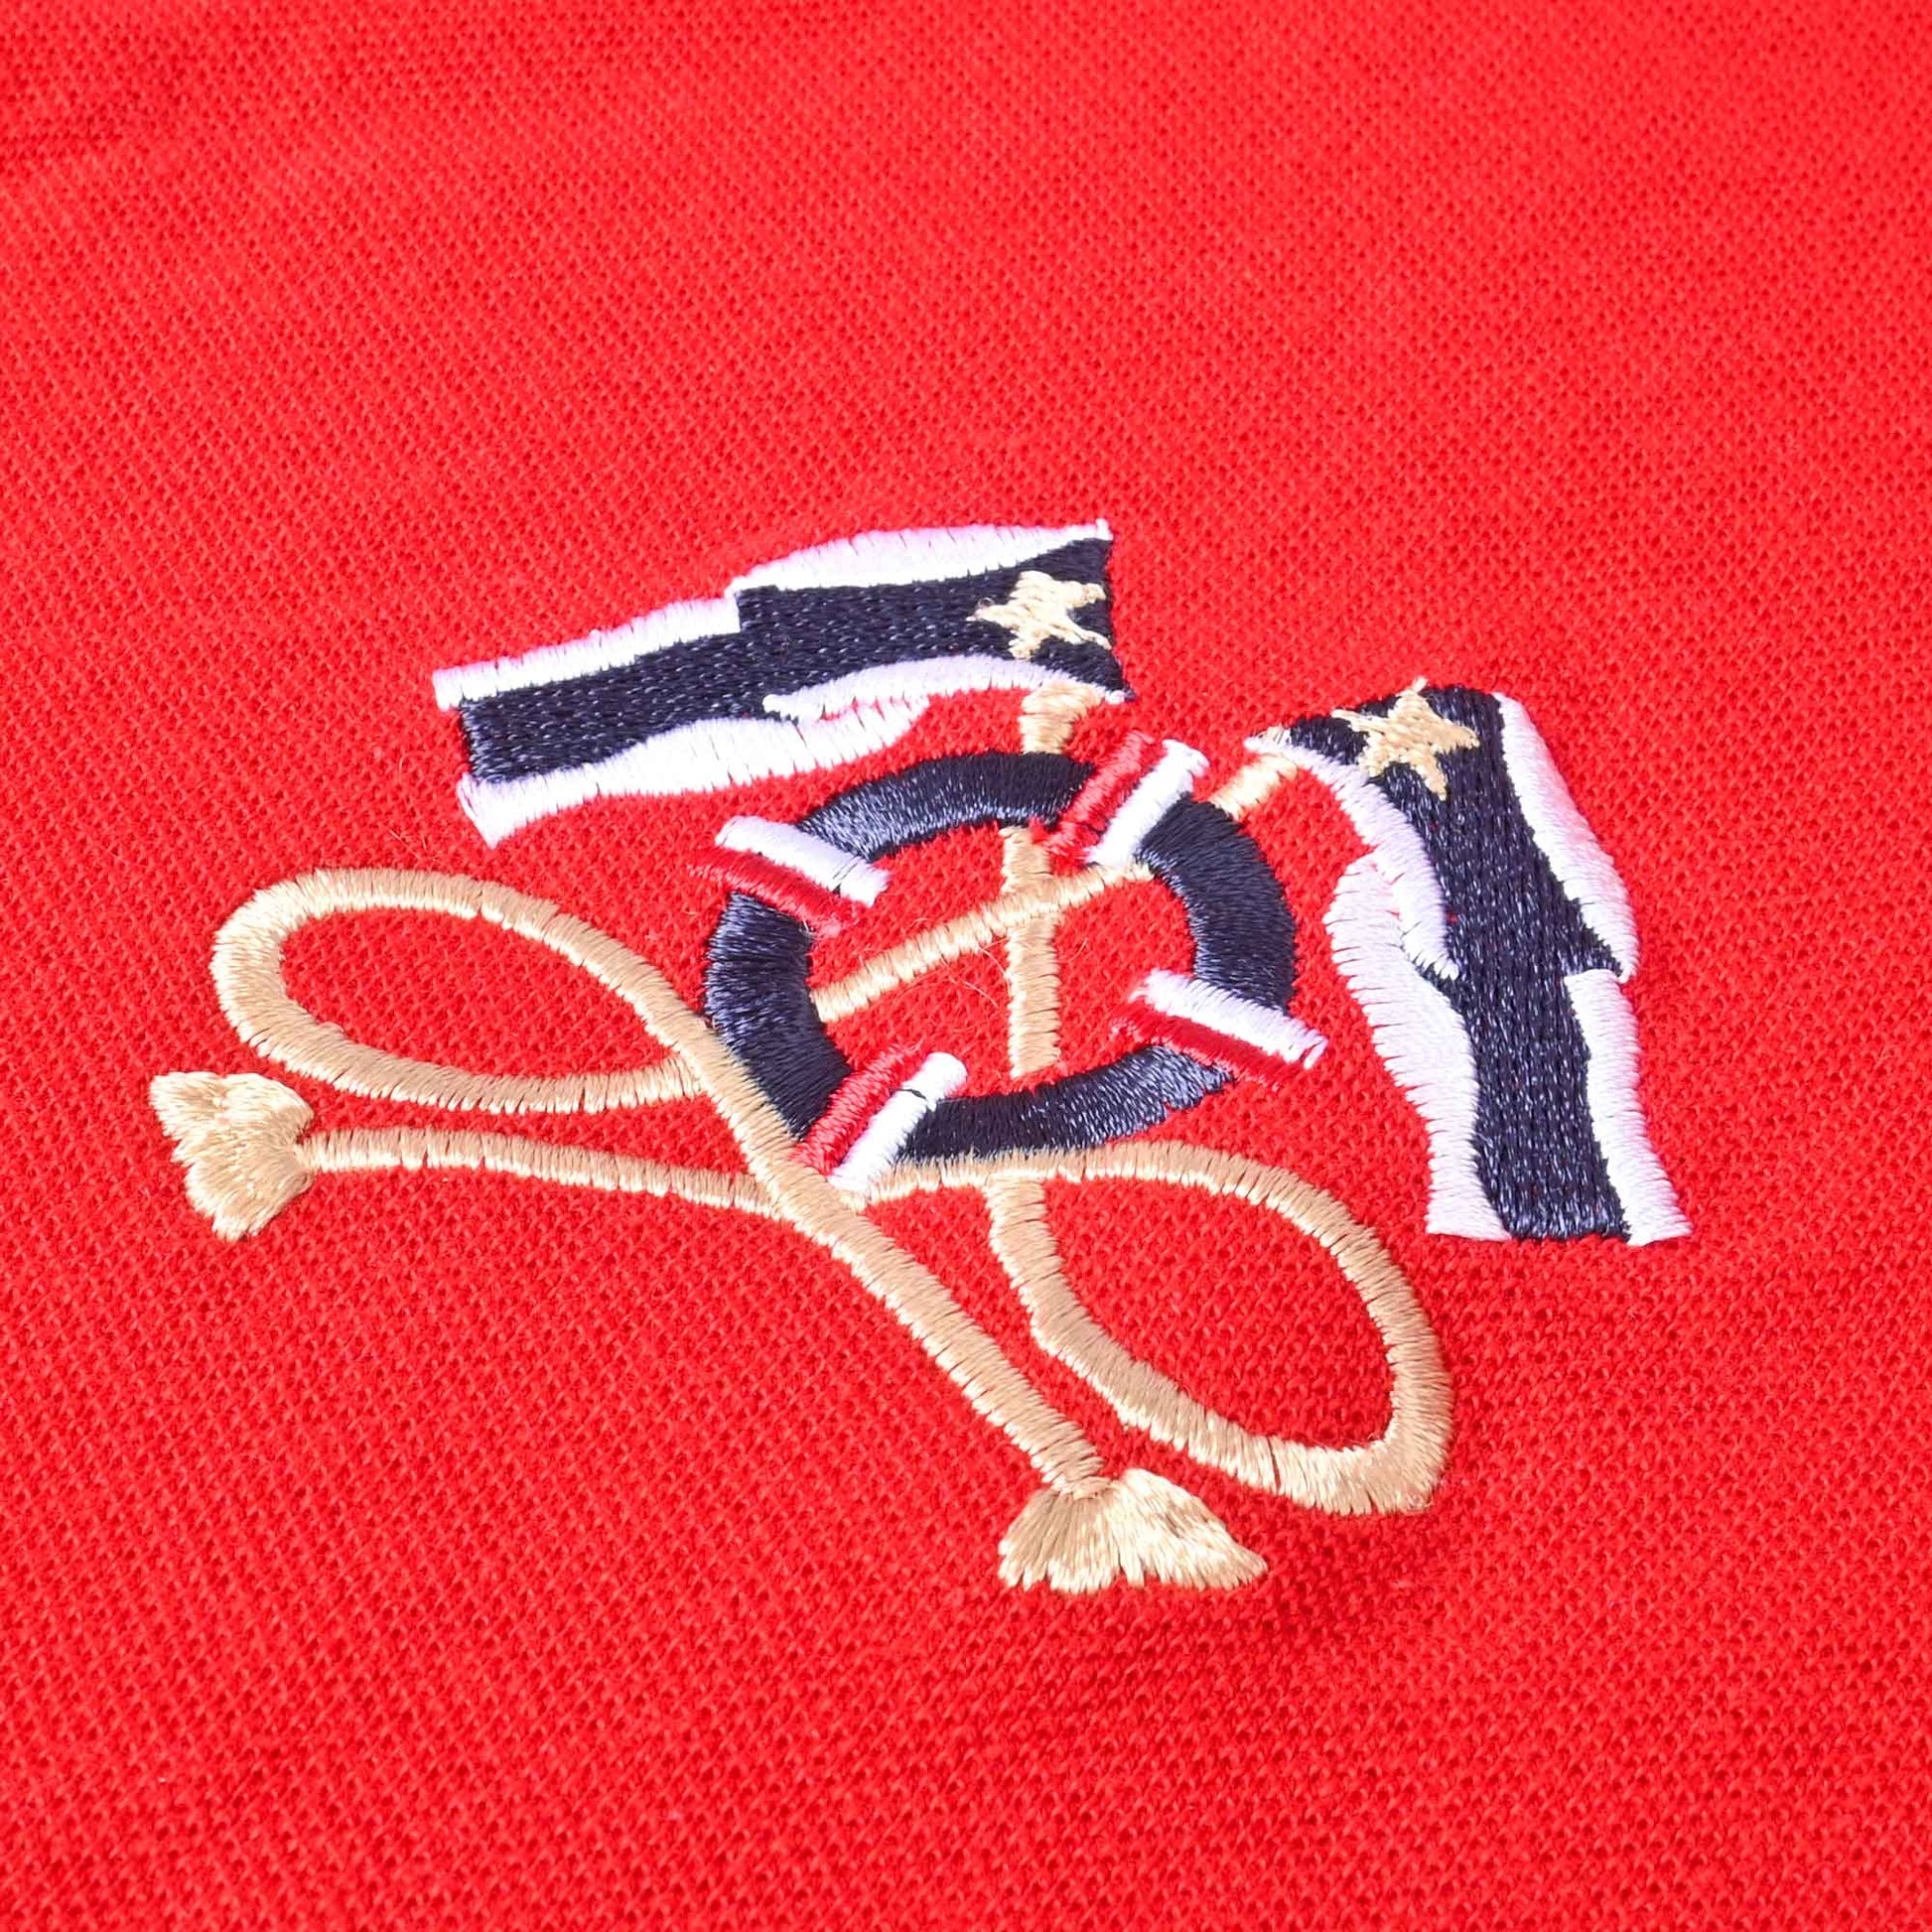 Polo Republica Men's Double Pony Crest & 8 Polo Embroidered Pocket Polo Shirt Men's Polo Shirt Polo Republica 